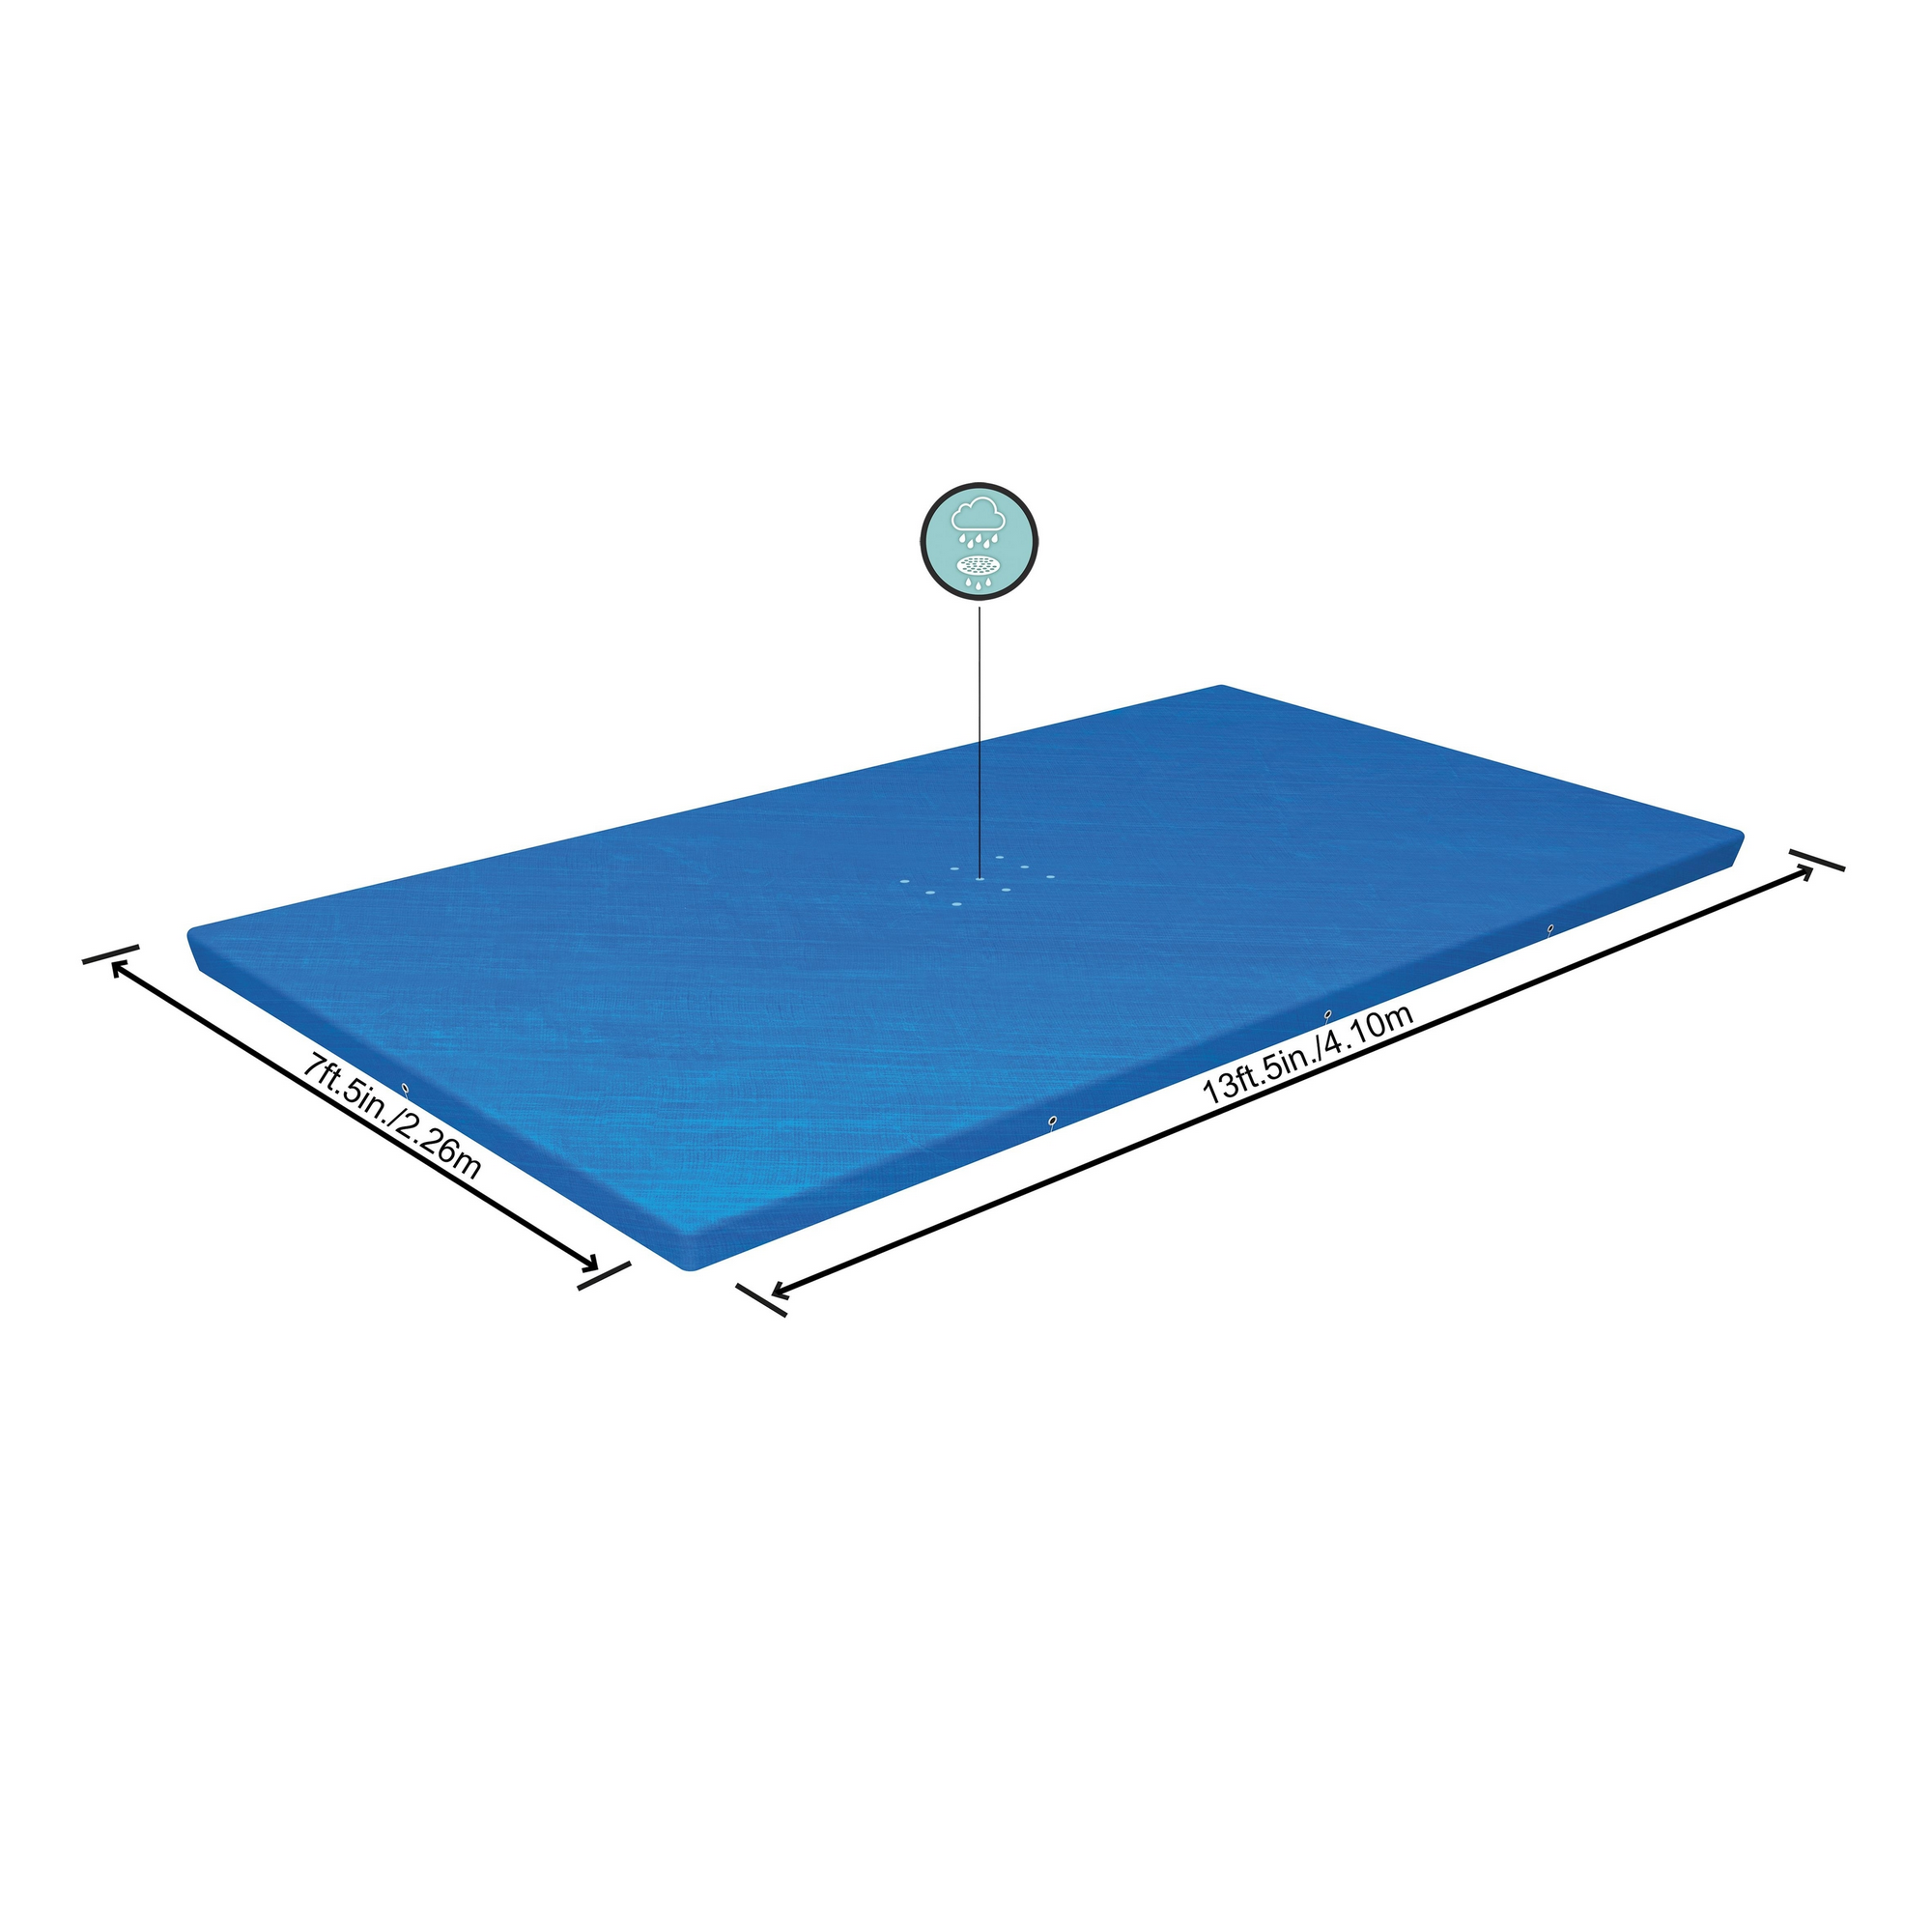 Abdeckplane für Steel Frame Pool, Größe: 410 x 226 cm + product picture